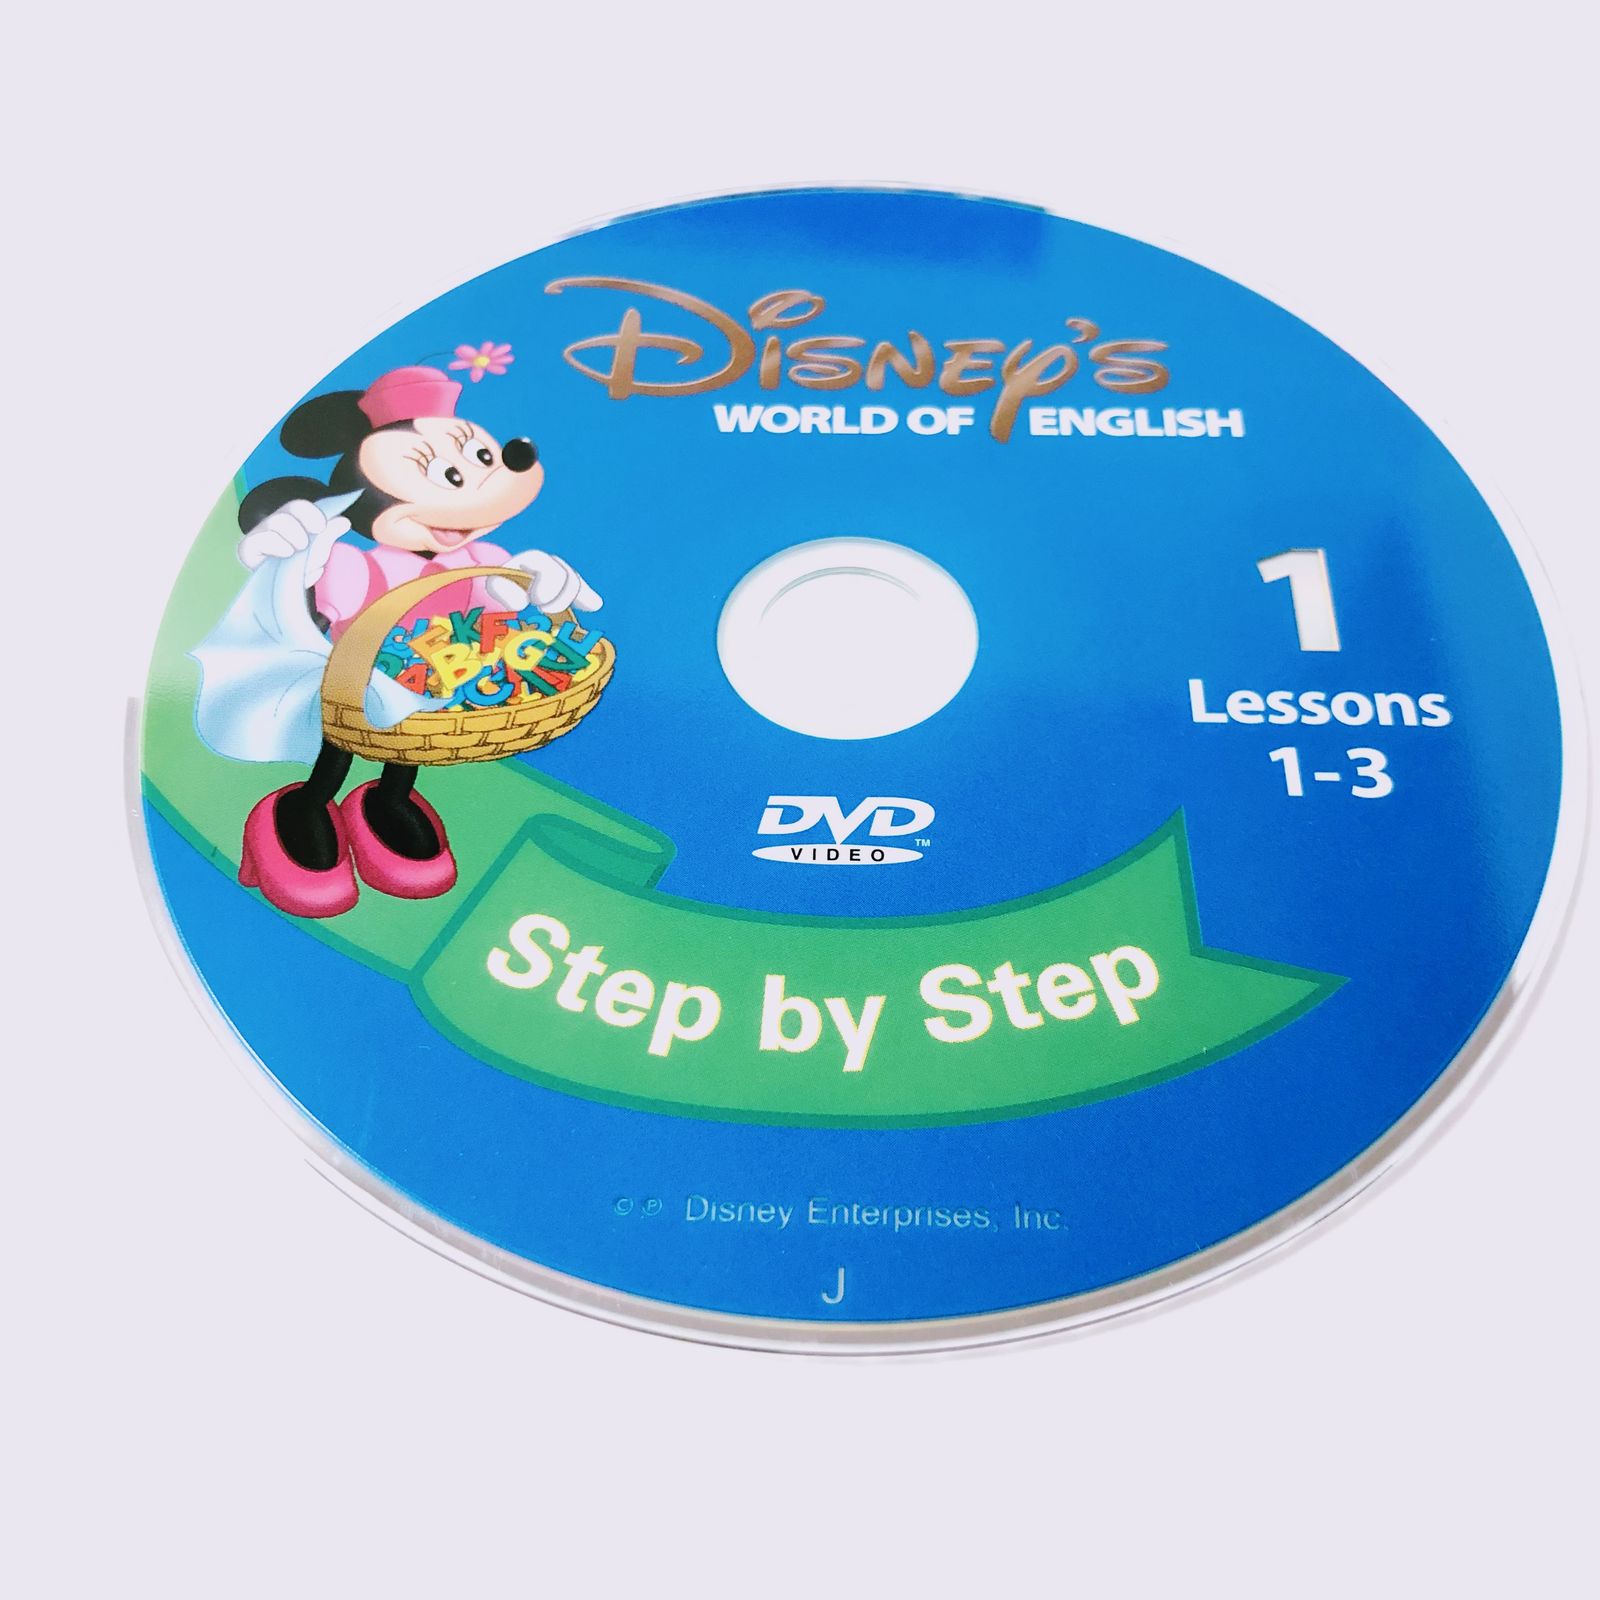 ディズニー英語システム メインプログラム DVD 旧子役 2006年 英語教材 